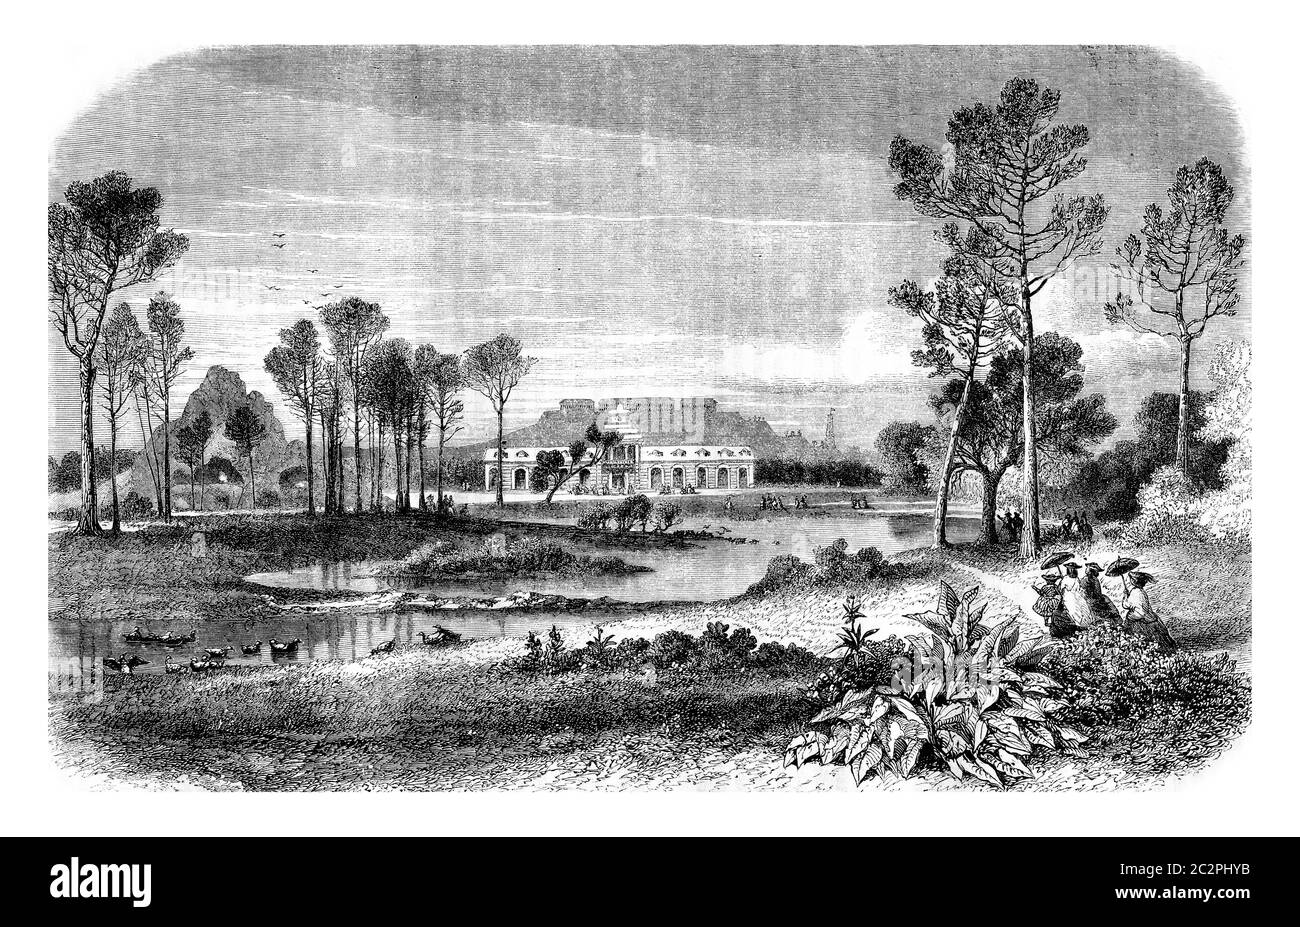 Vue sur les jardins zoologiques du Bois de Boulogne, Paris, illustration gravée d'époque. Magasin Pittoresque 1861. Banque D'Images